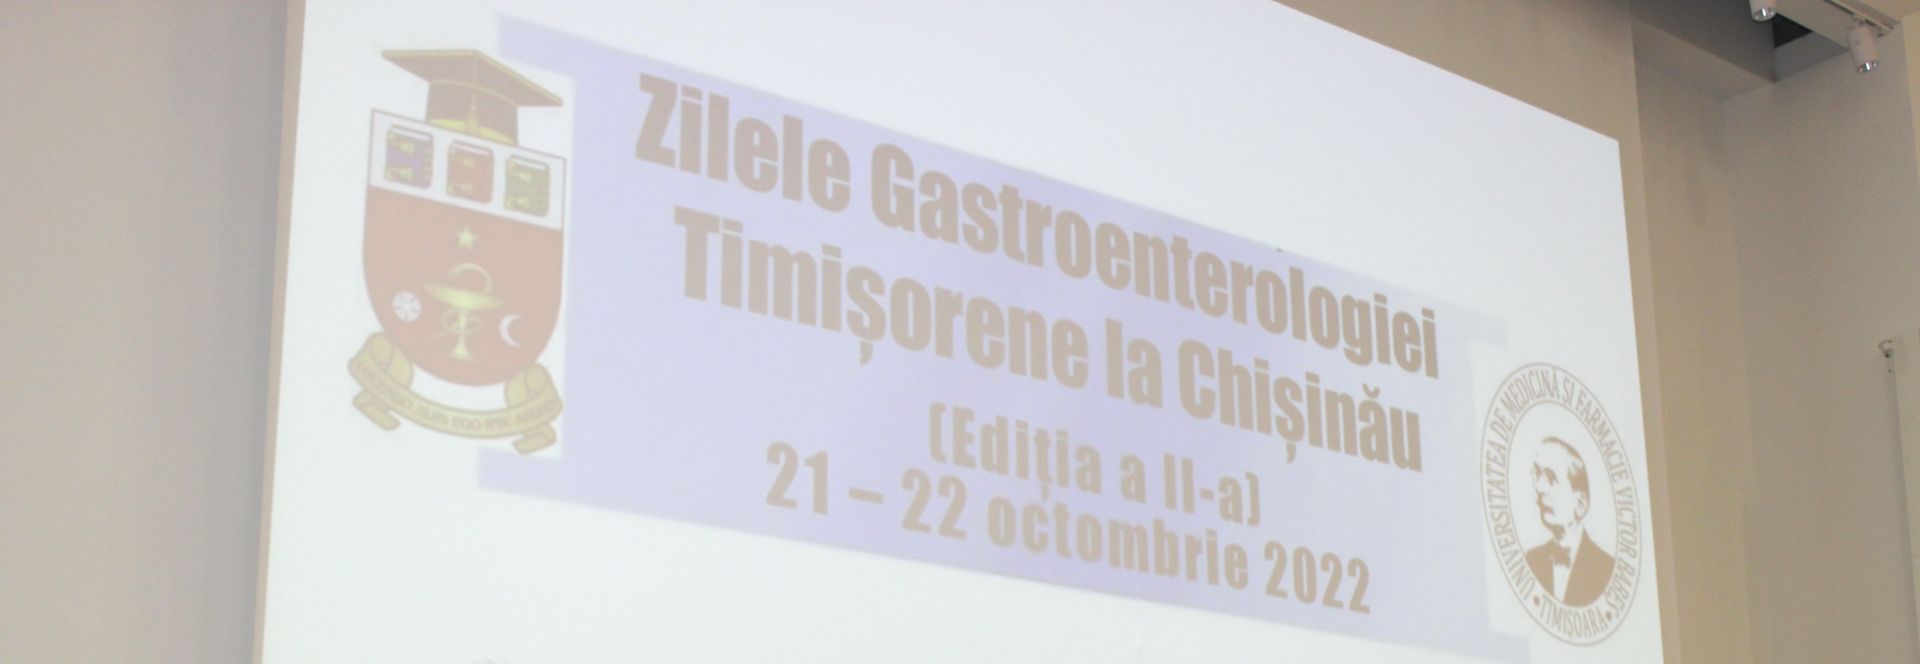 Zilele Gastroenterologiei Timișorene la Chișinău